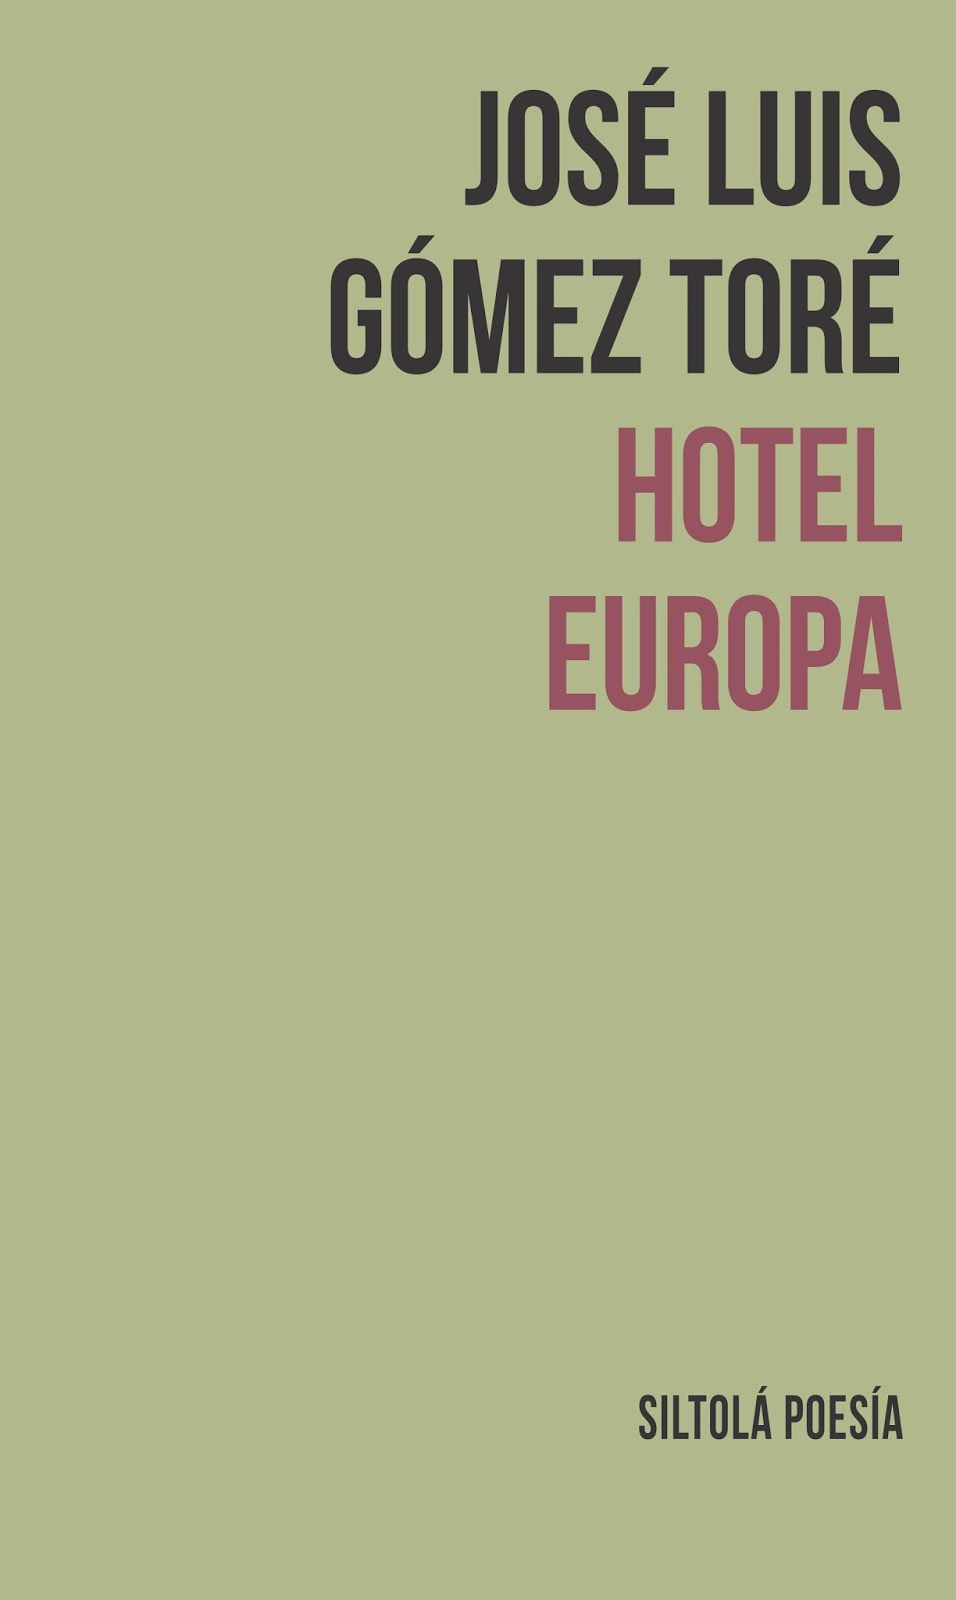 JOSÉ LUIS GÓMEZ TORÉ. Hotel Europa (La Isla de Siltolá)